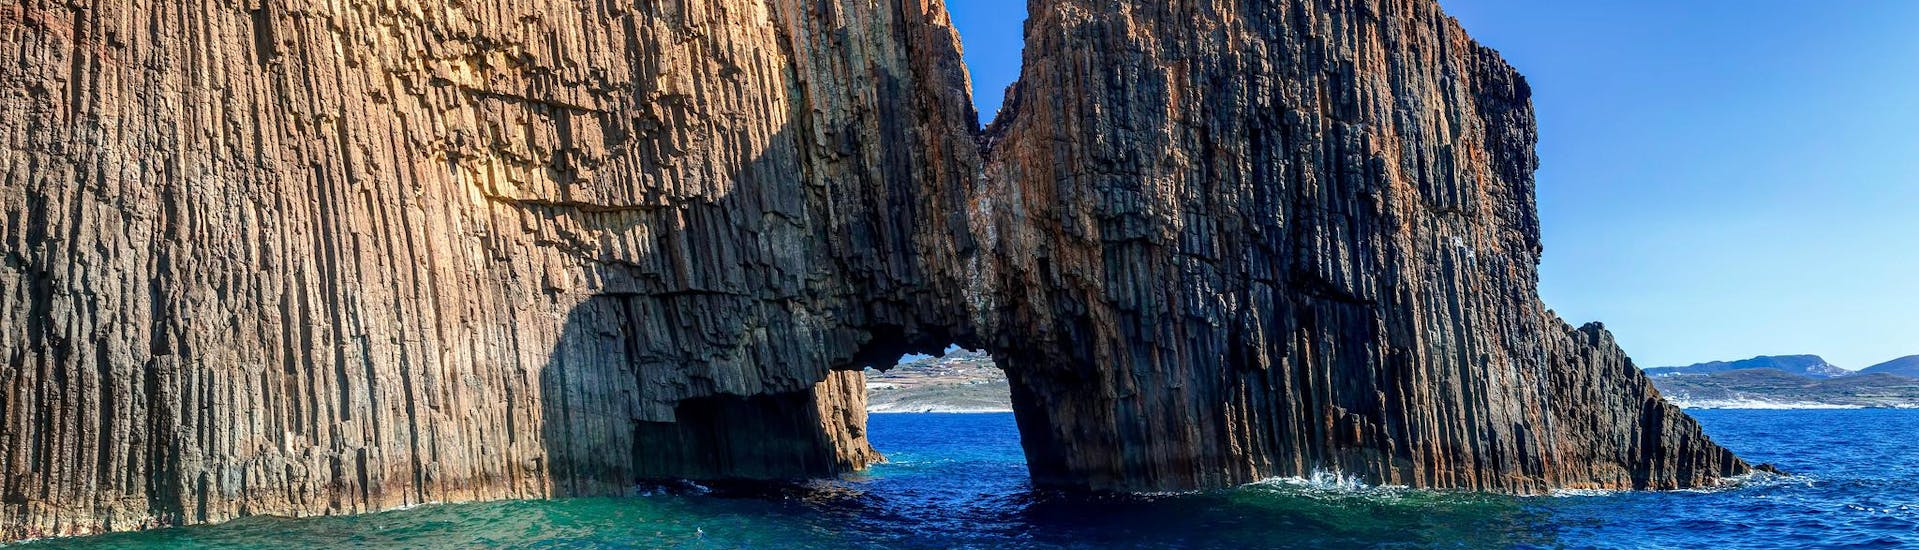 Incredibili isolotti vulcanici rocciosi di Glaronissia con un bellissimo arco, che si possono vedere con una gita in barca nell'isola di Milos.